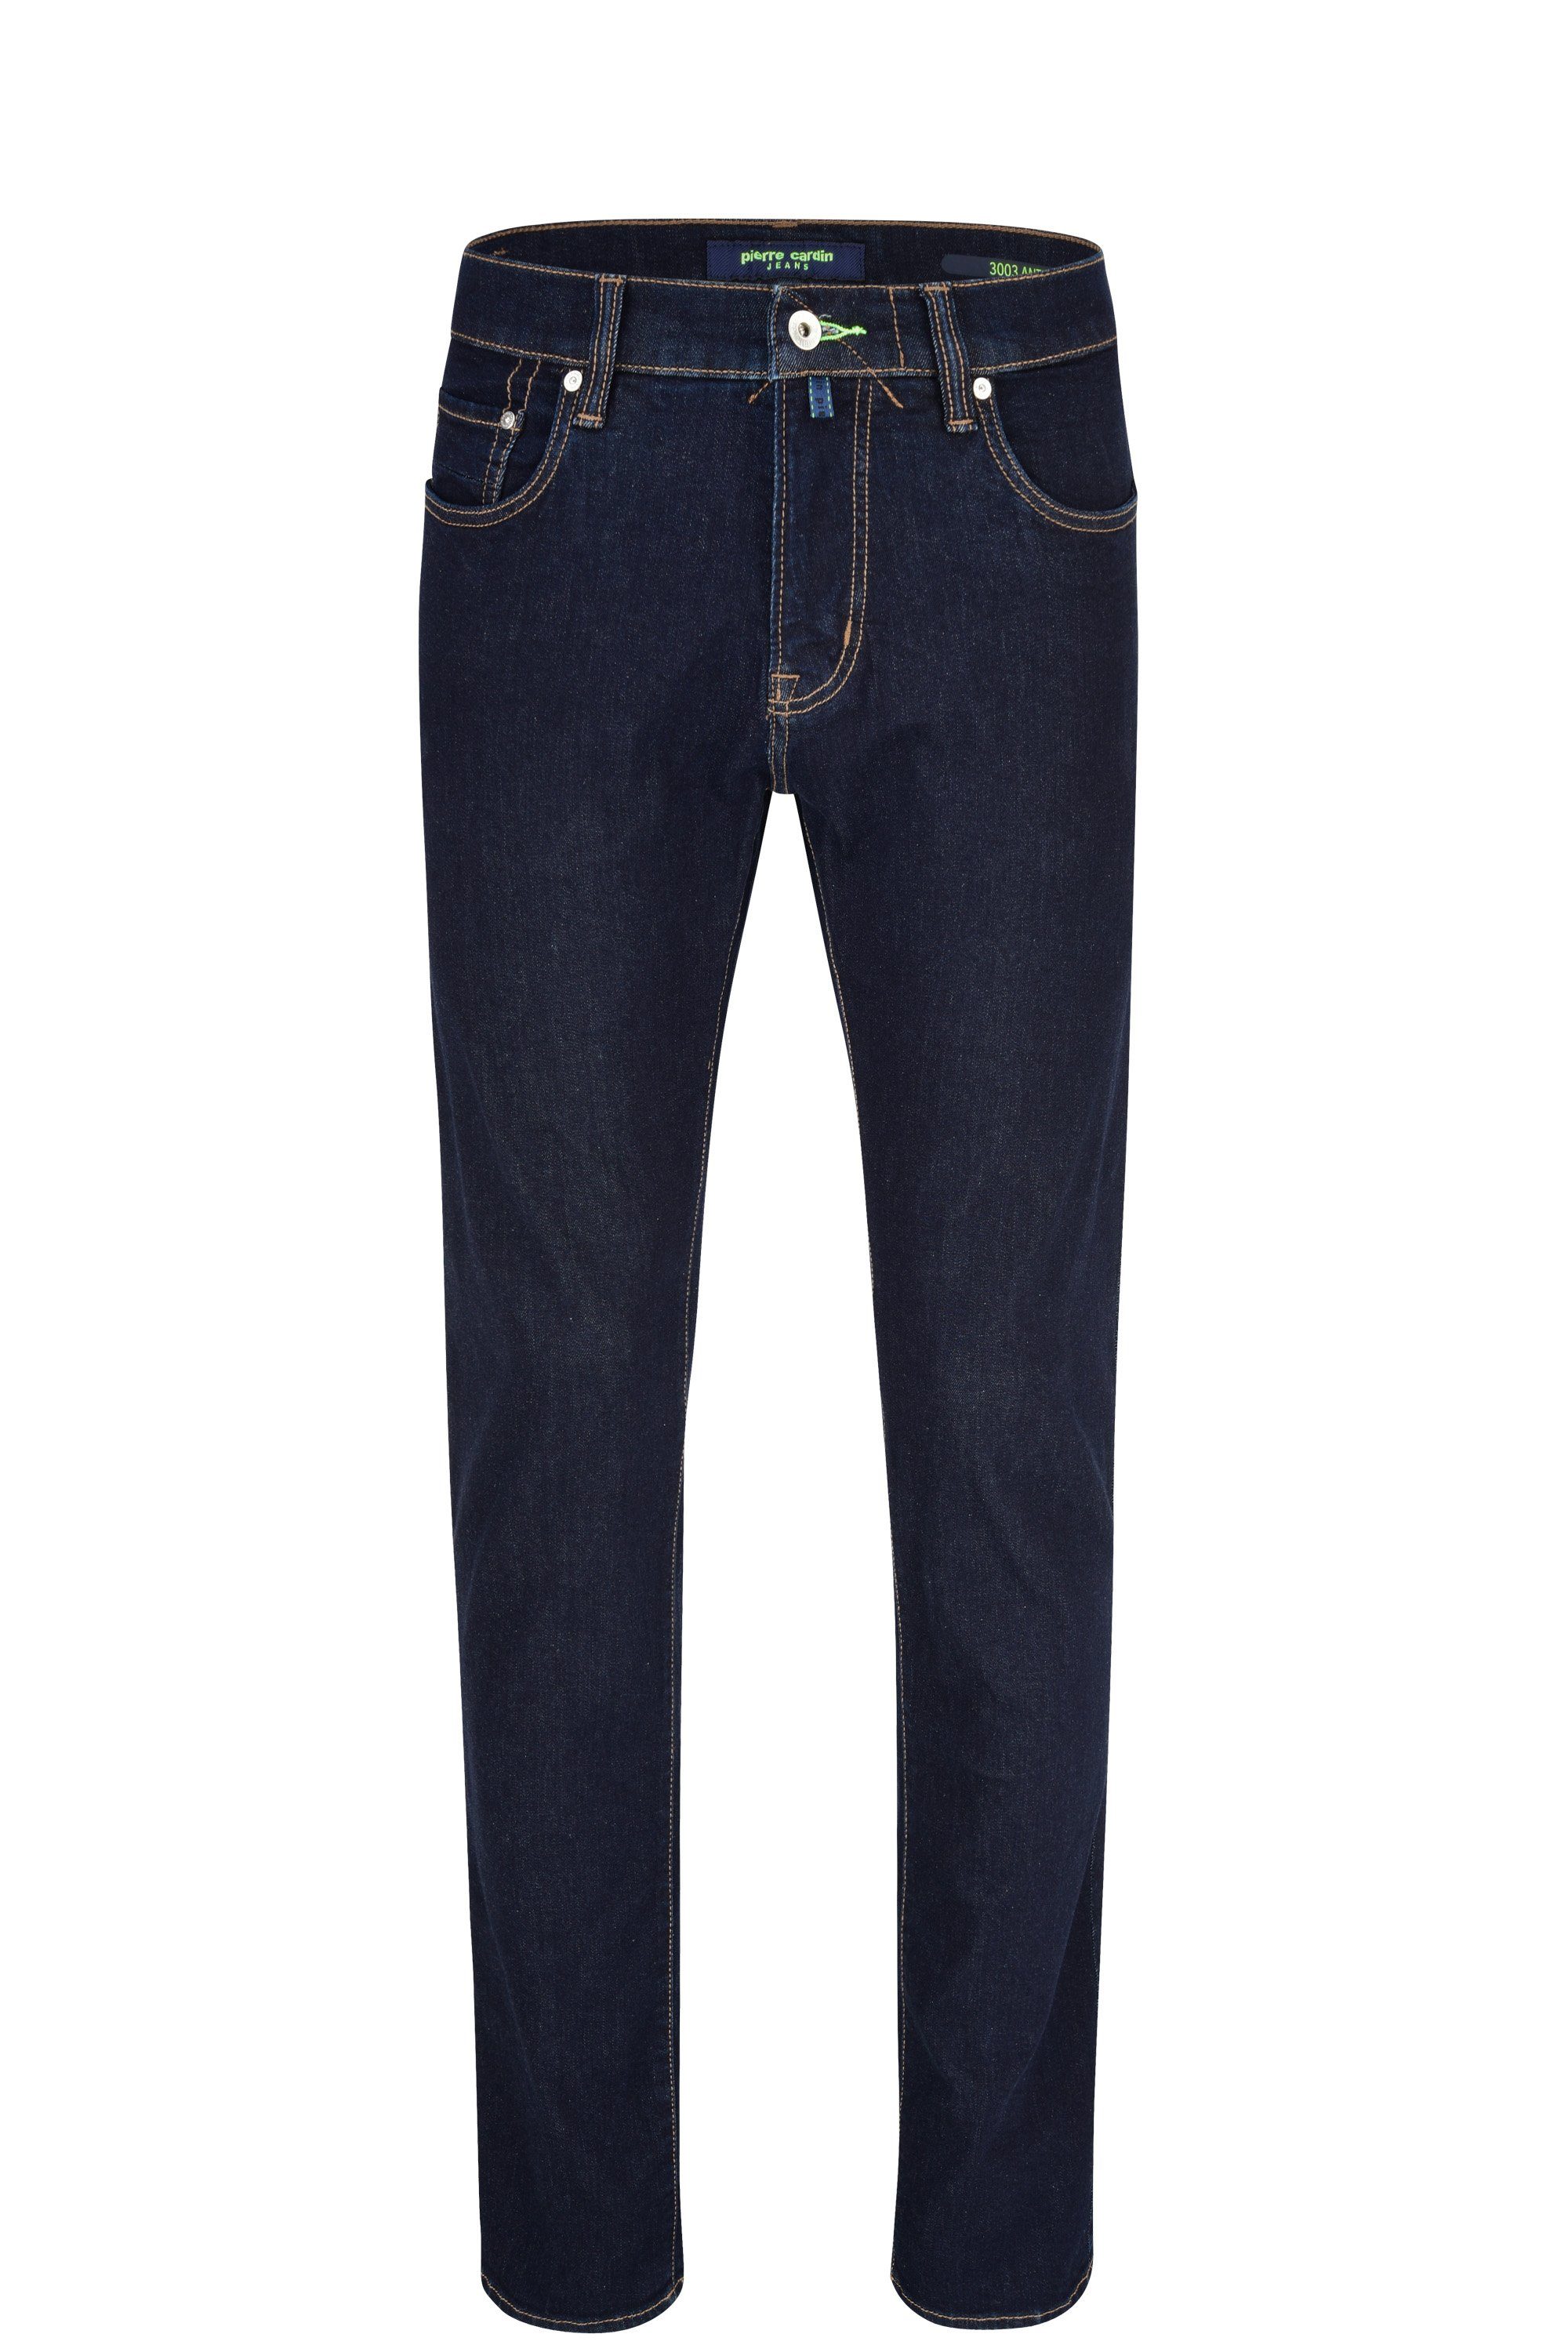 Pierre Cardin 5-Pocket-Jeans PIERRE CARDIN ANTIBES deep blue 3003 6100.51